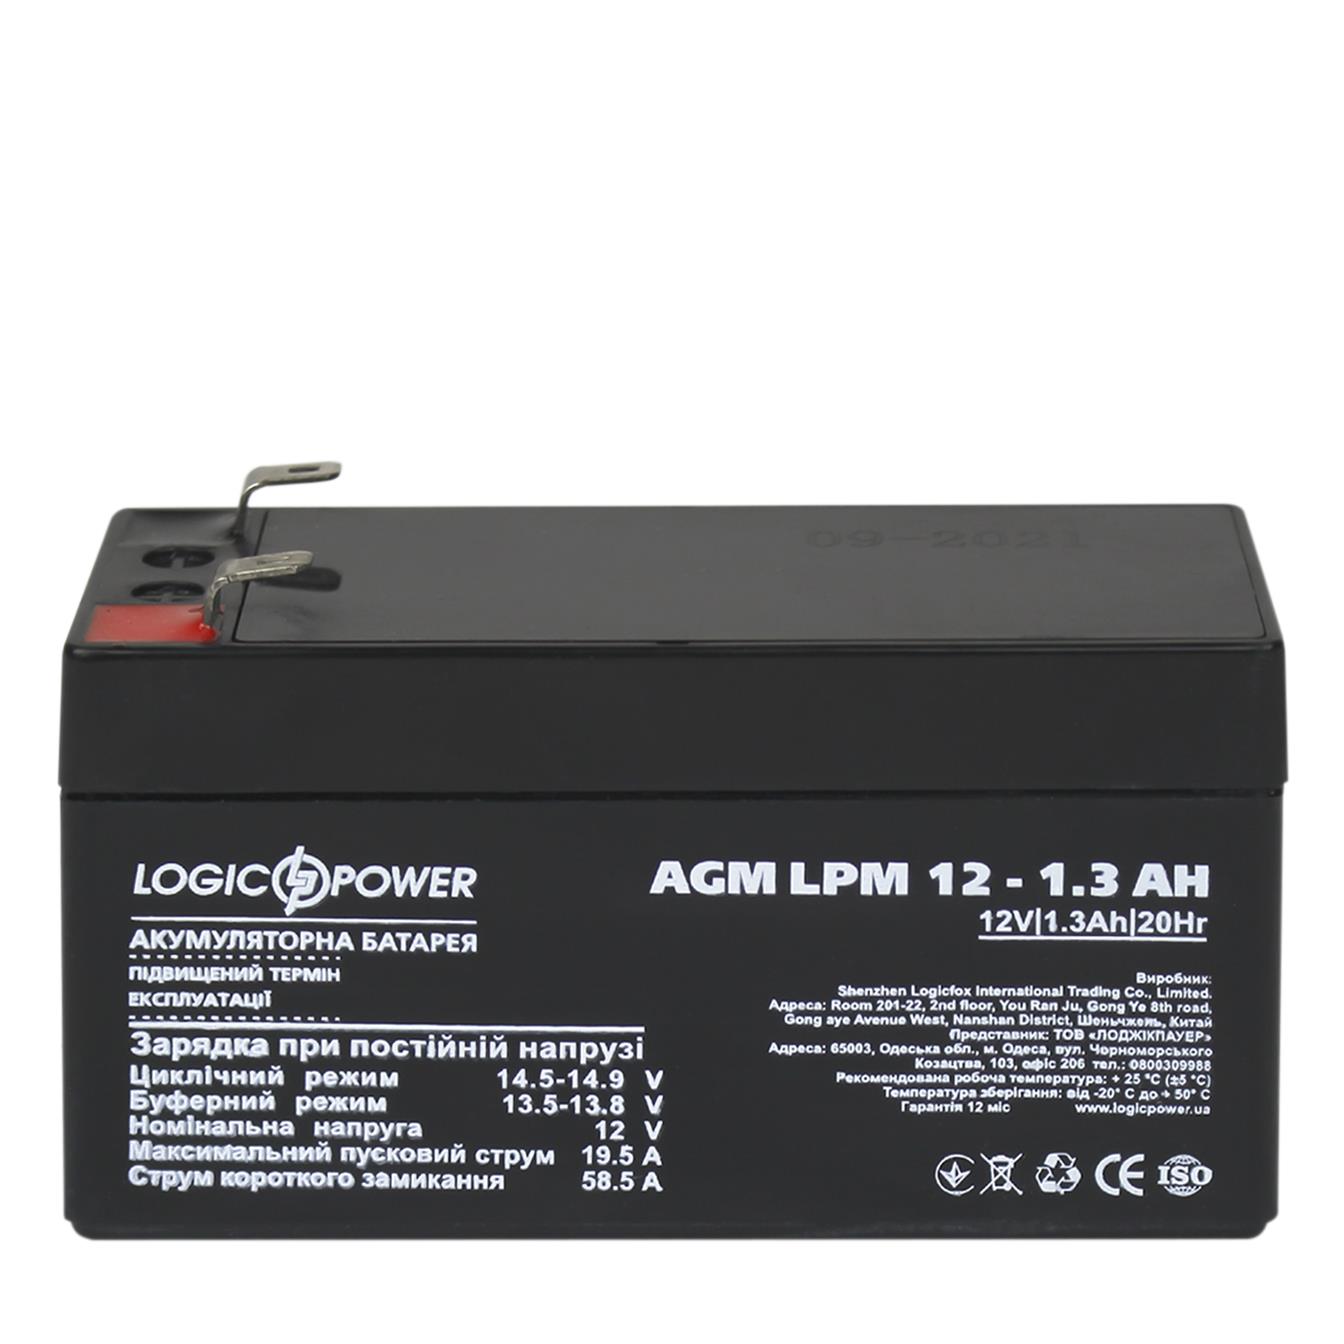 продаём LogicPower AGM LPM 12V - 1.3 Ah (4131) в Украине - фото 4